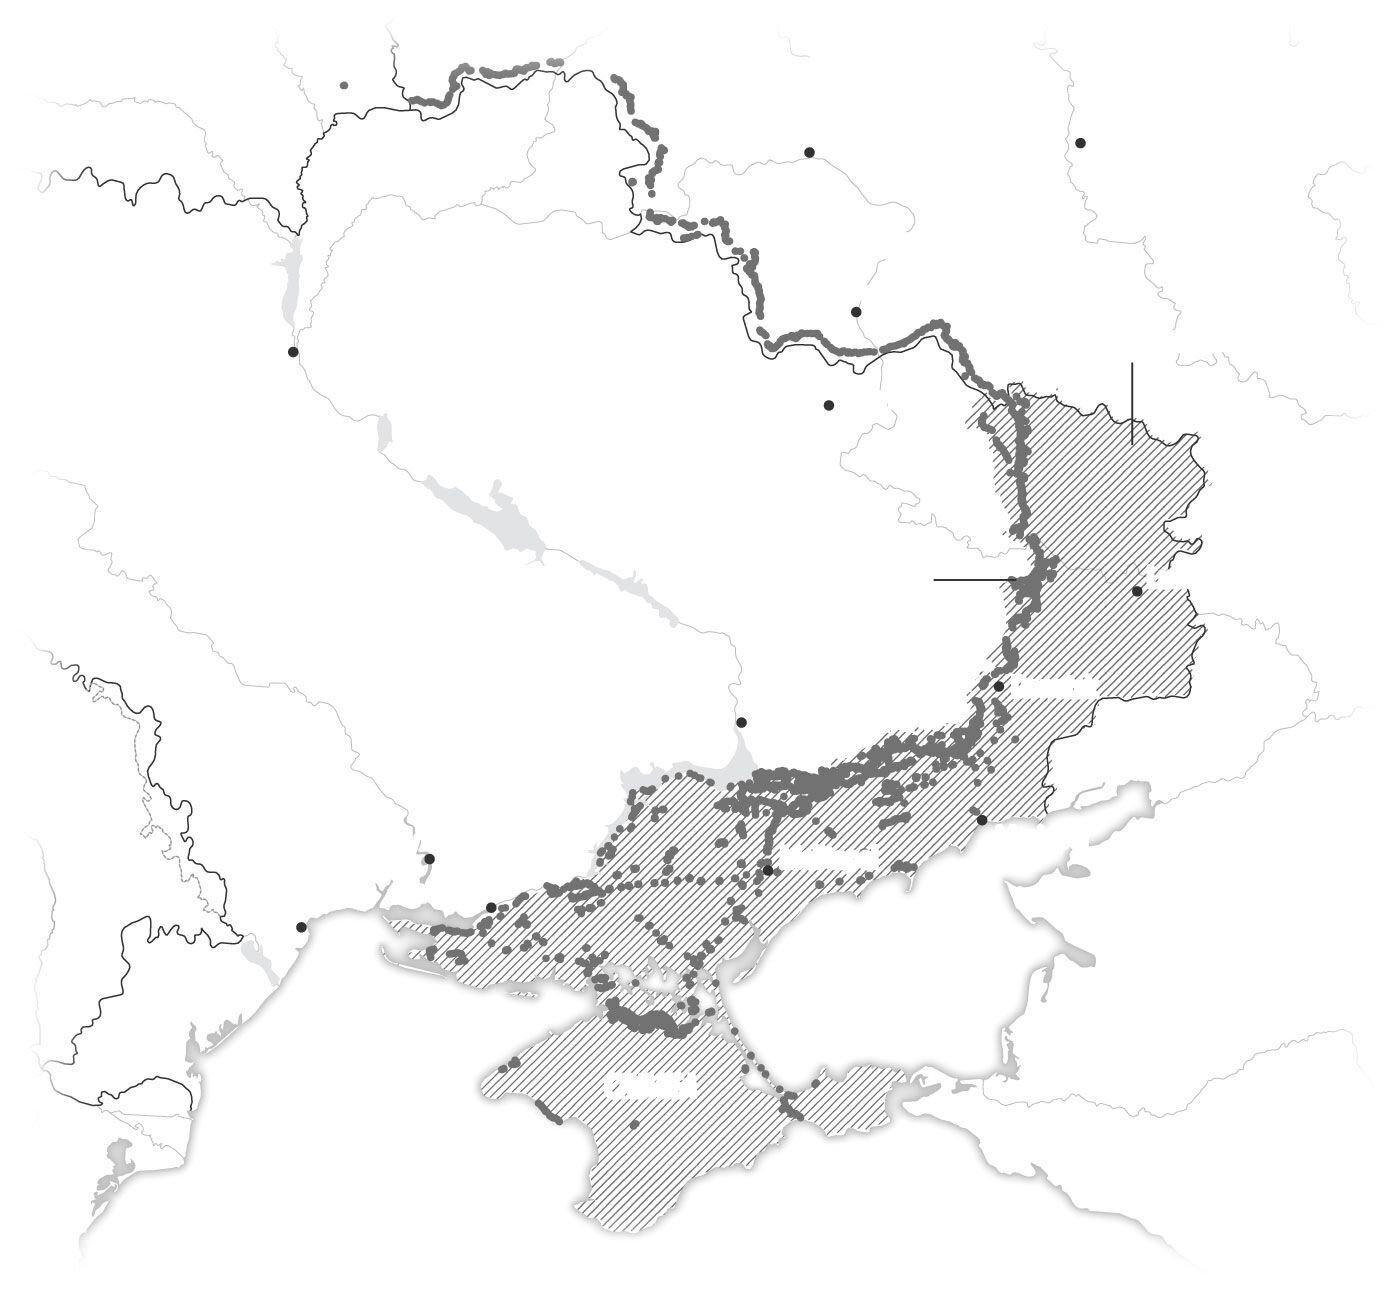 "Теперь понятно, почему контрнаступление ВСУ такое медленное": западные аналитики визуализировали российские укрепления на юге Украины. Схема